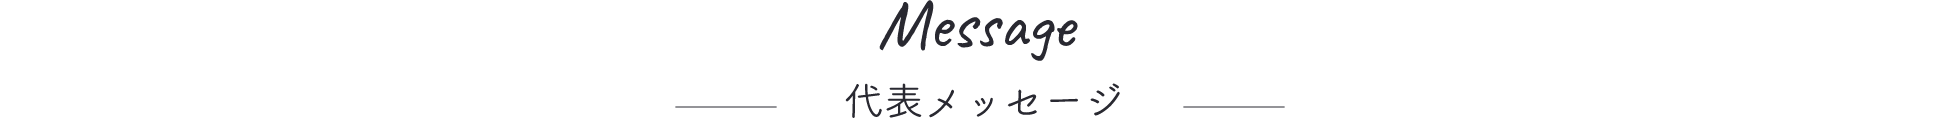 Message 代表メッセージ